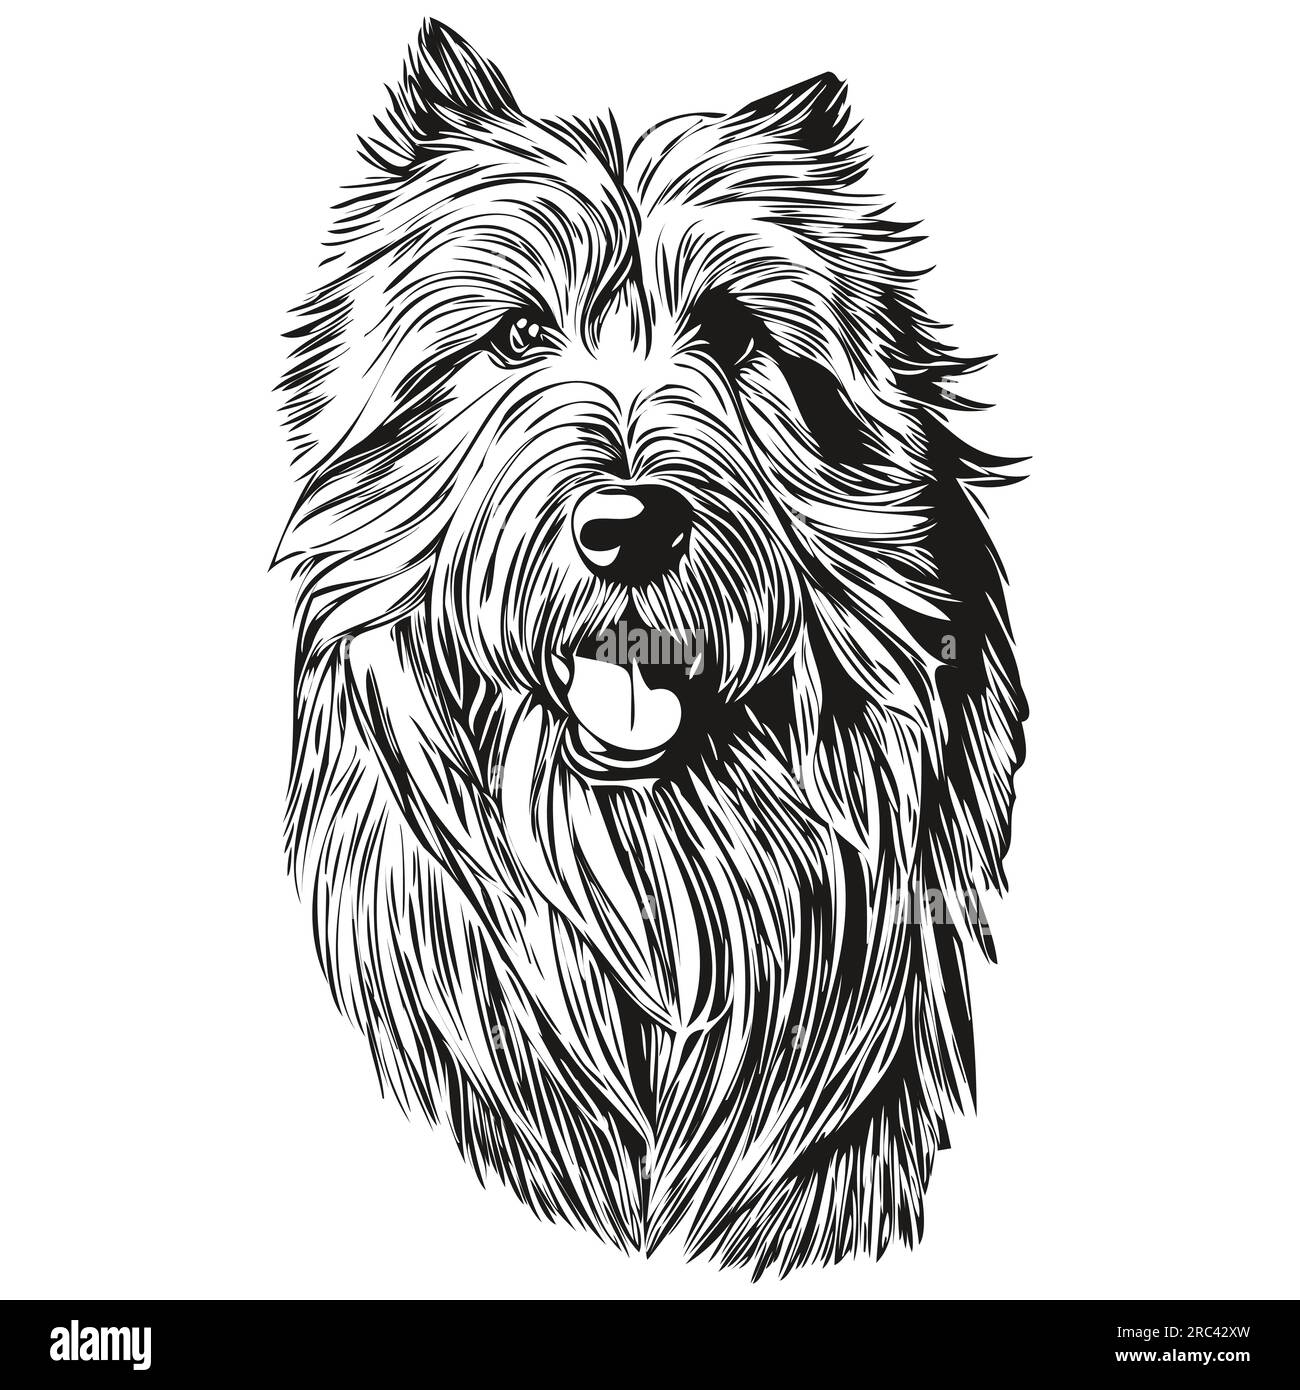 Silhouette d'animal de compagnie de chien Collie barbu, illustration de ligne d'animal dessiné à la main dessin de dessin vectoriel noir et blanc Illustration de Vecteur